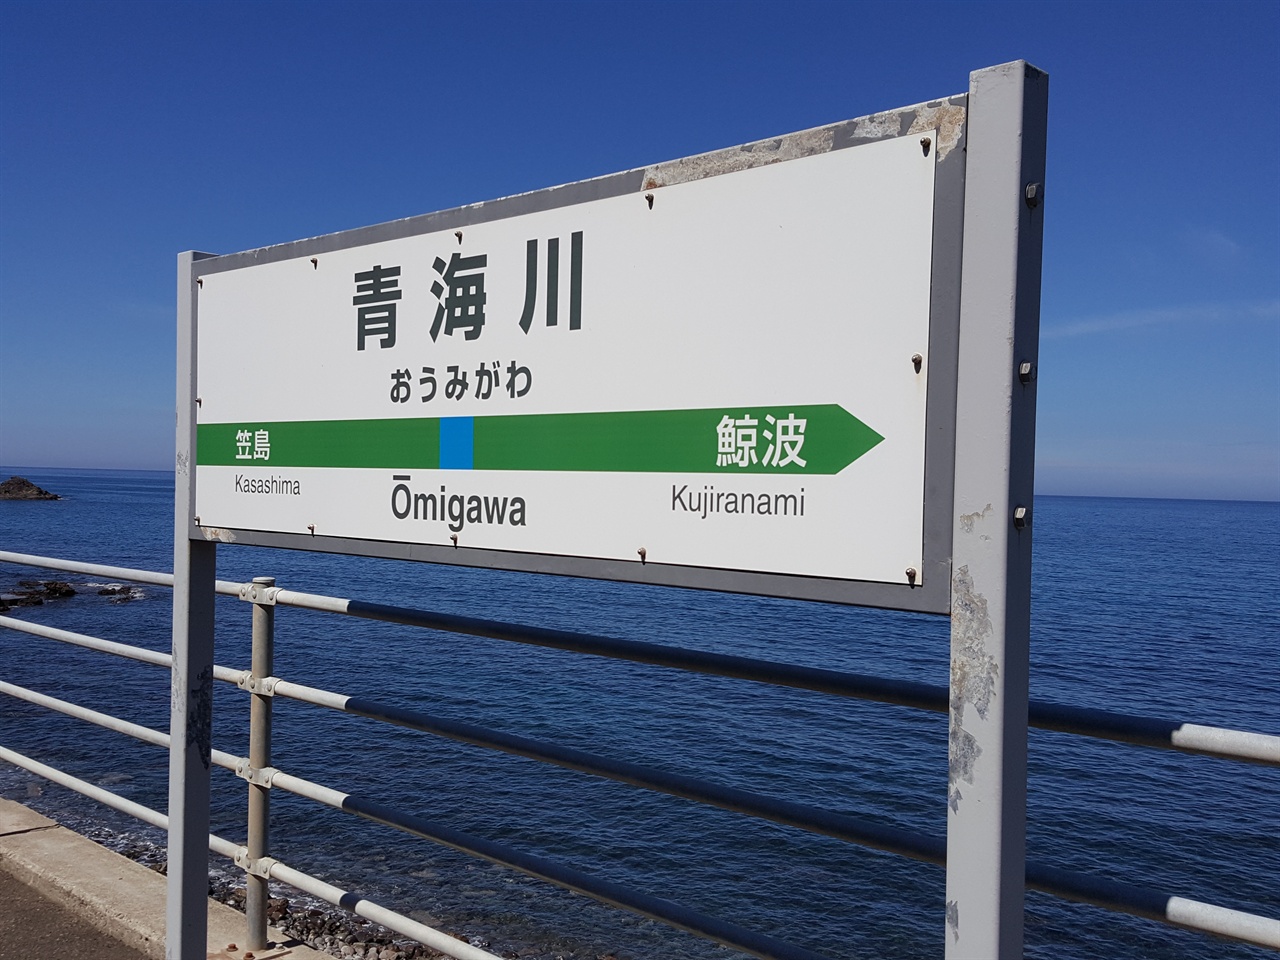  동해의 바다와 가장 가까운 역 오미가와역.